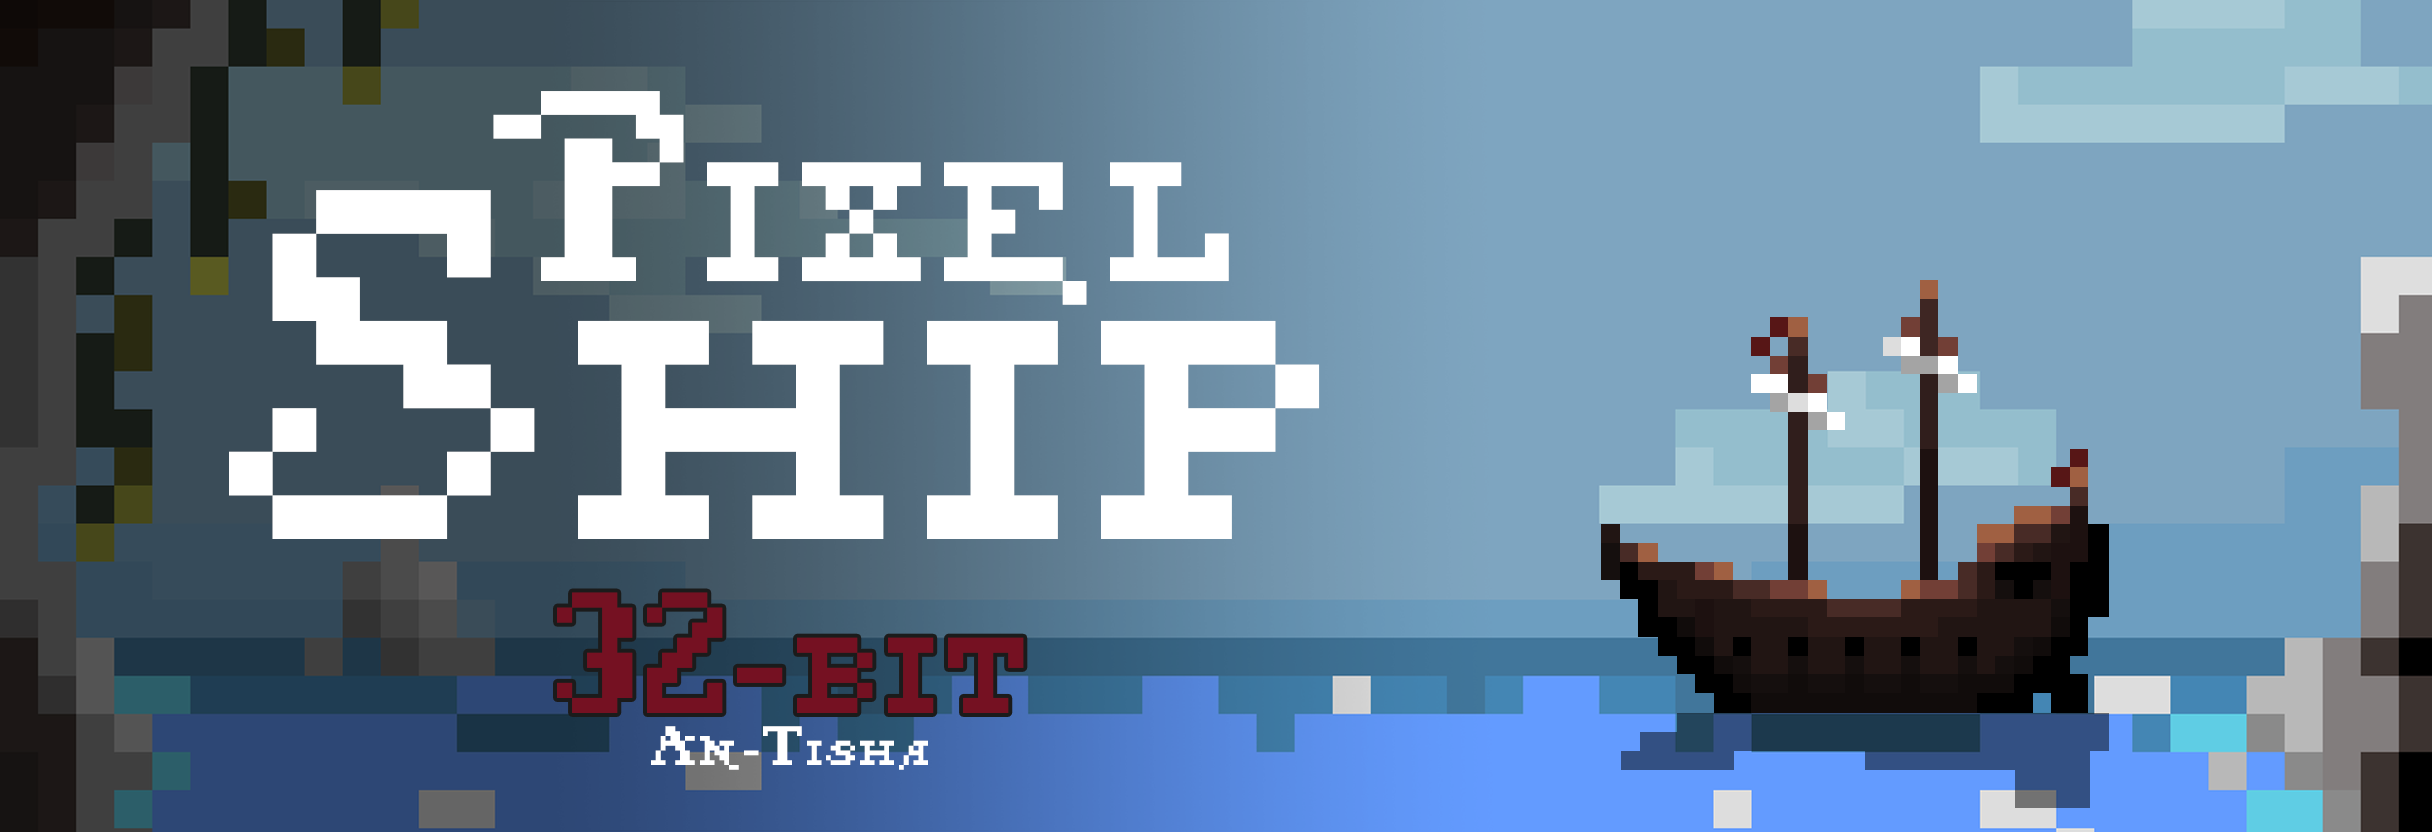 Pixel Ship 32x32